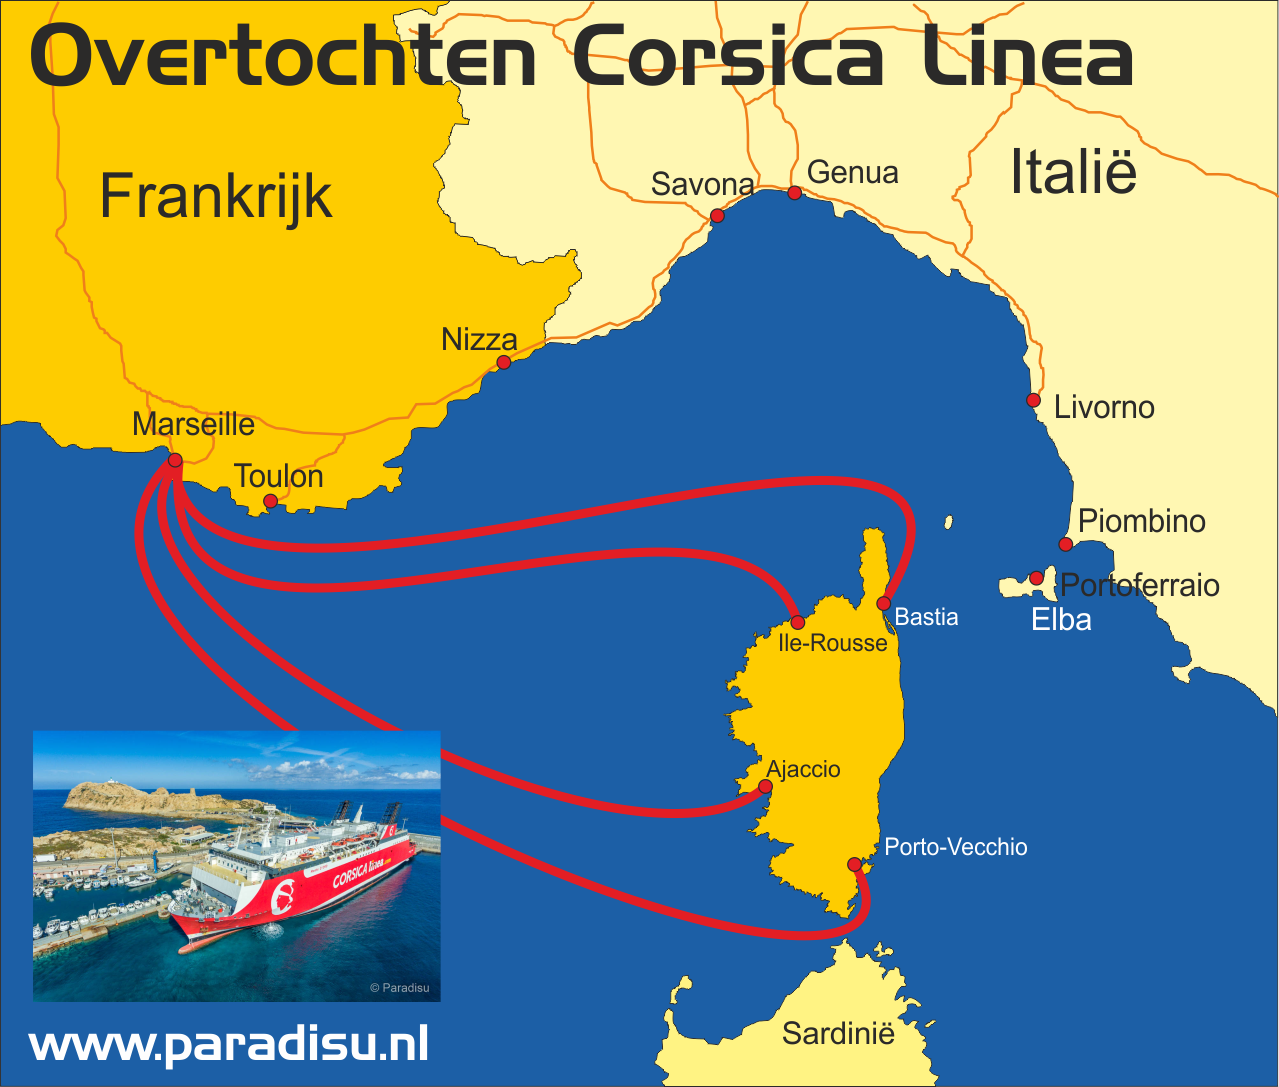 Corsica Linea veerboot routes